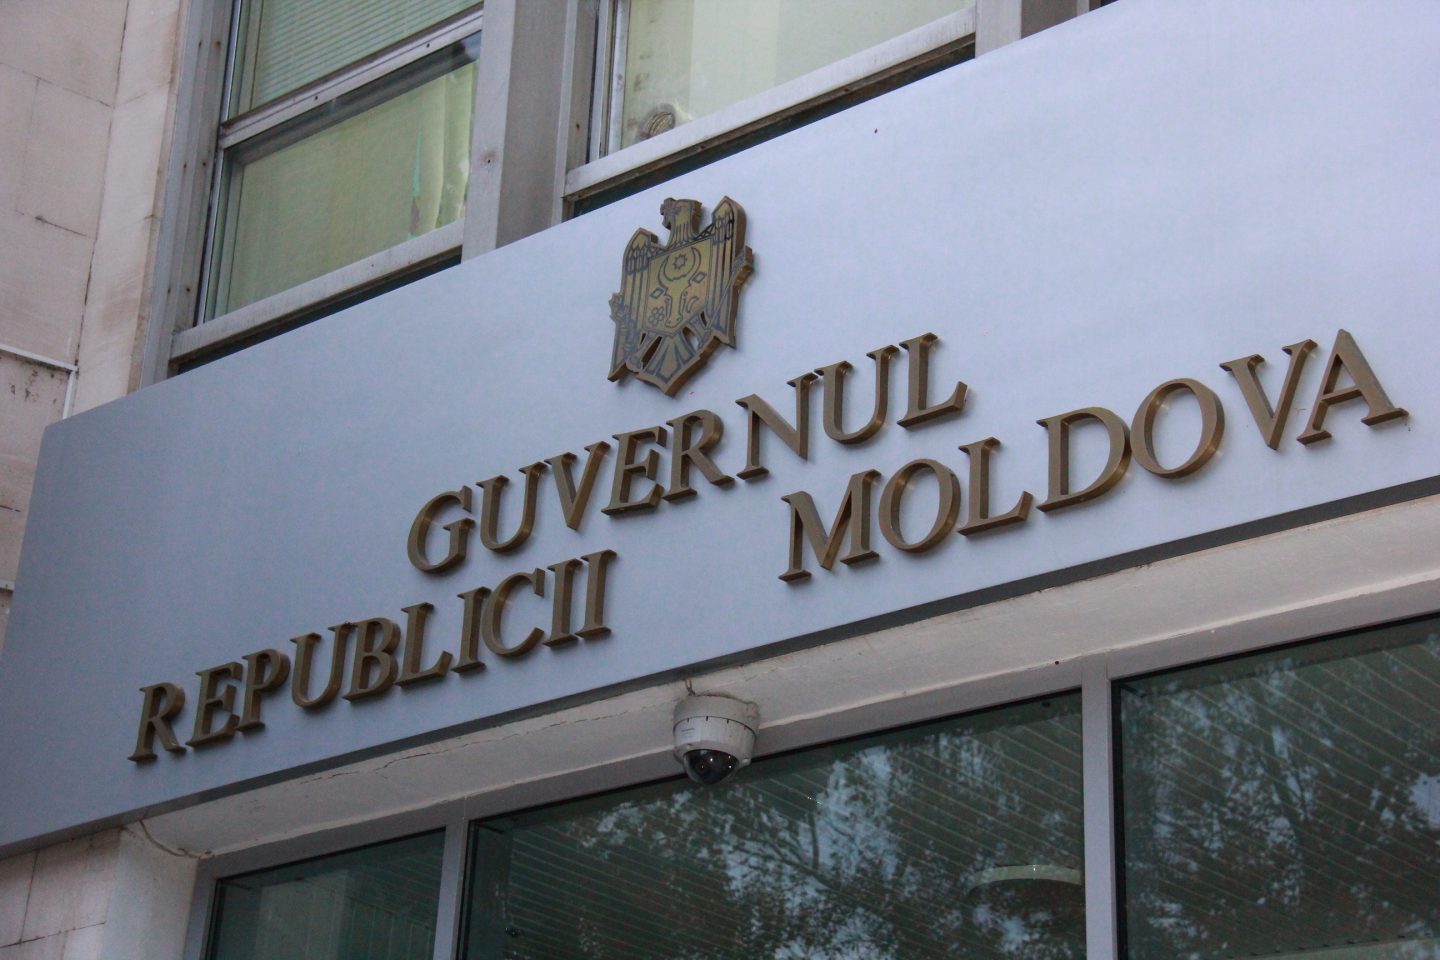 Cazul răpirii celor patru cetățeni moldoveni, discutat la Guvern